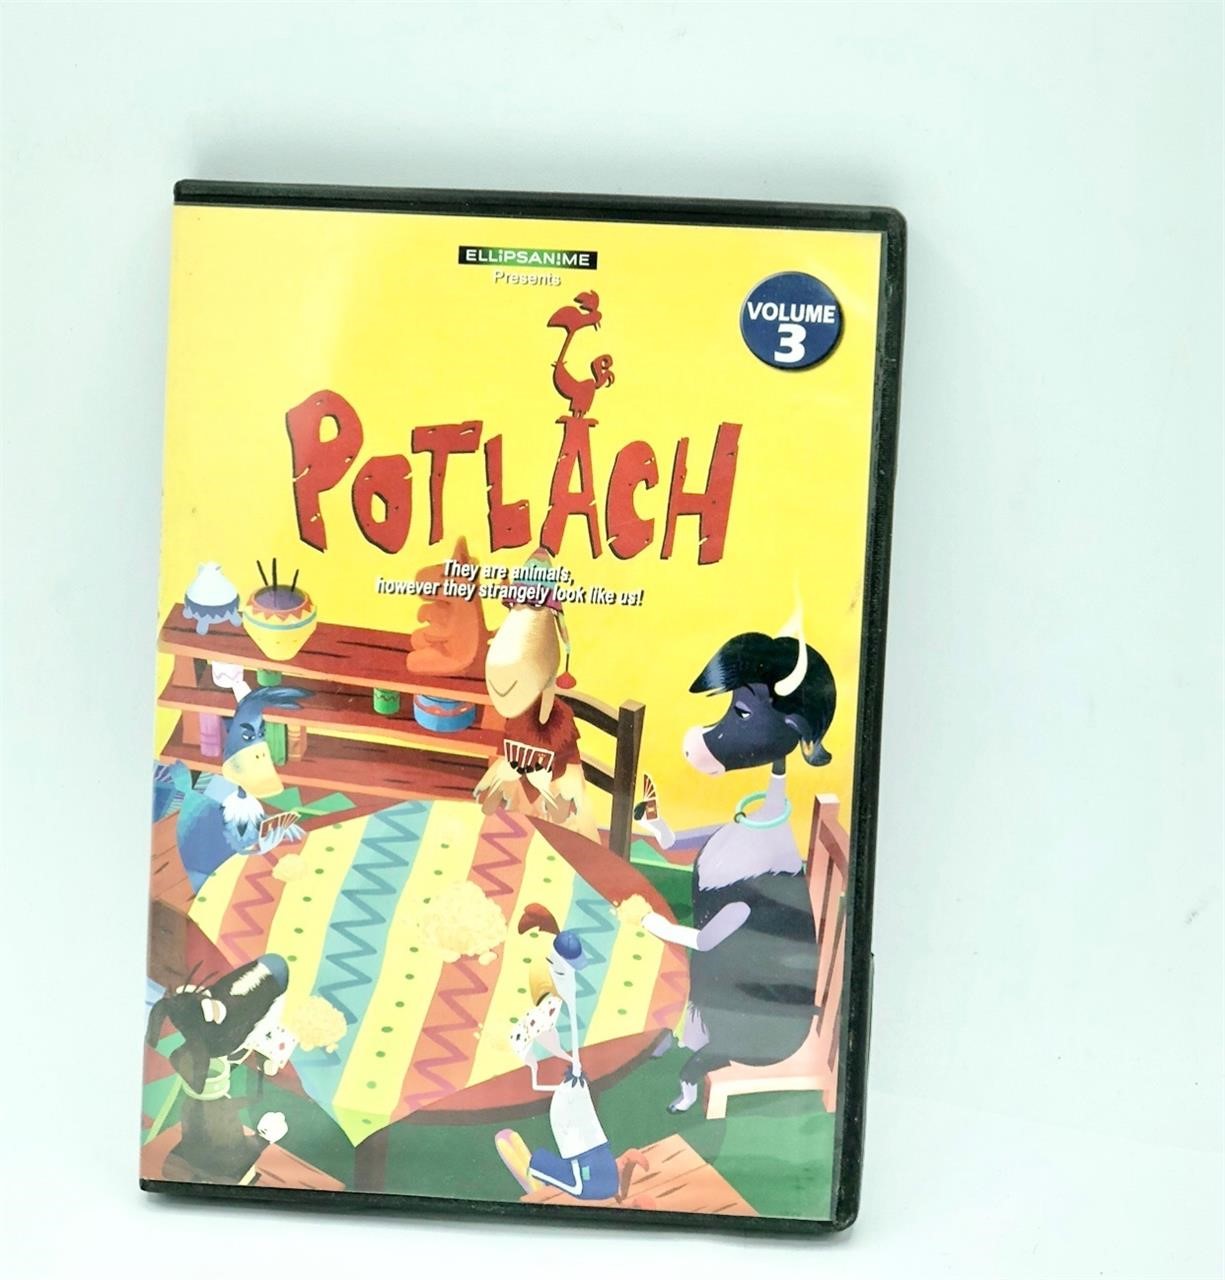 Potlach Volune 3 DVD previously viewed